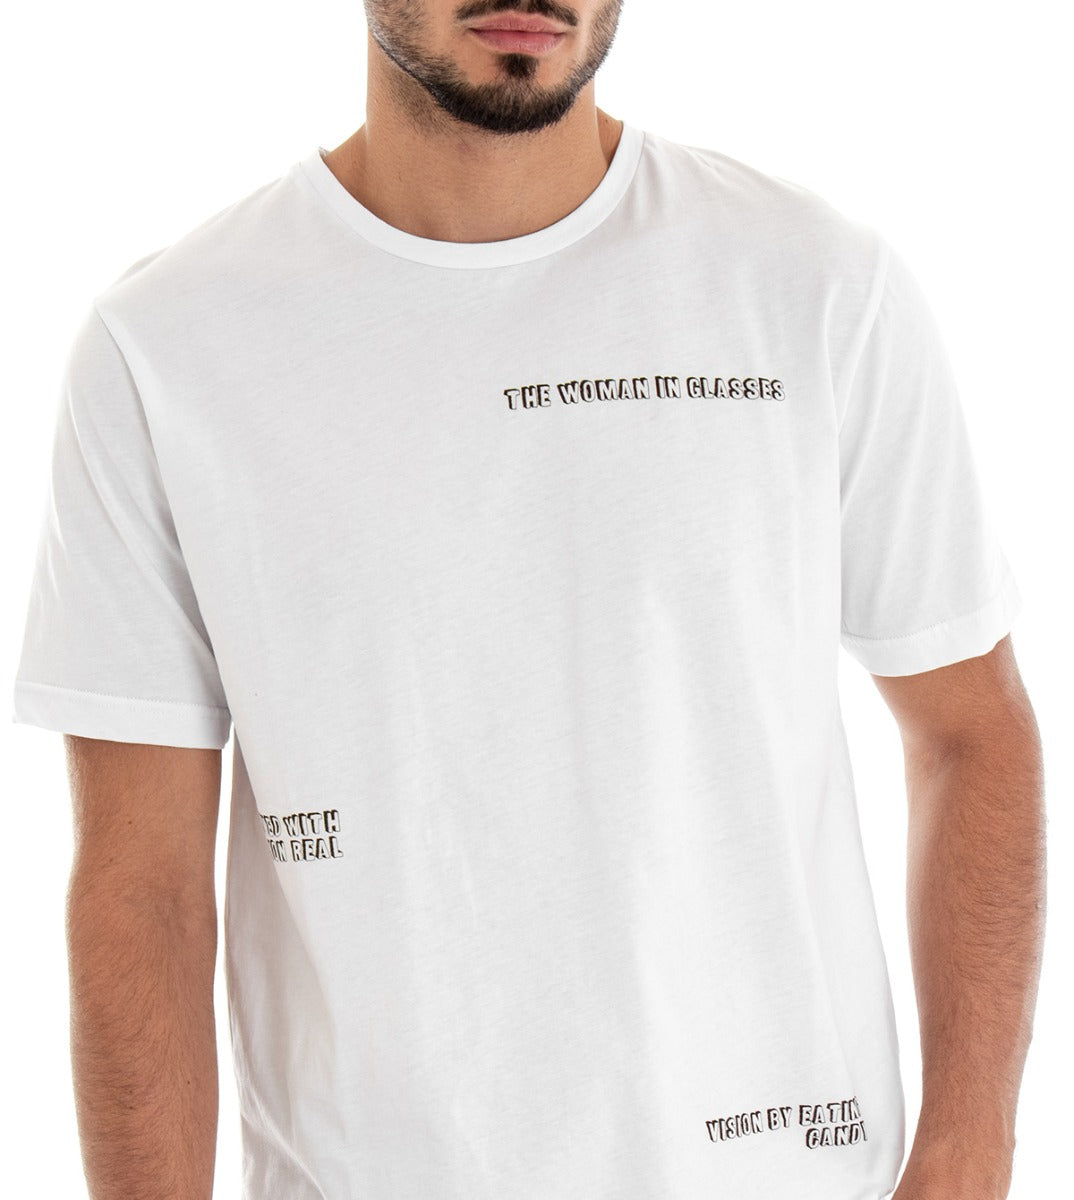 T-shirt Uomo Maglia Manica Corta Stampa Retro Bianco Cotone GIOSAL